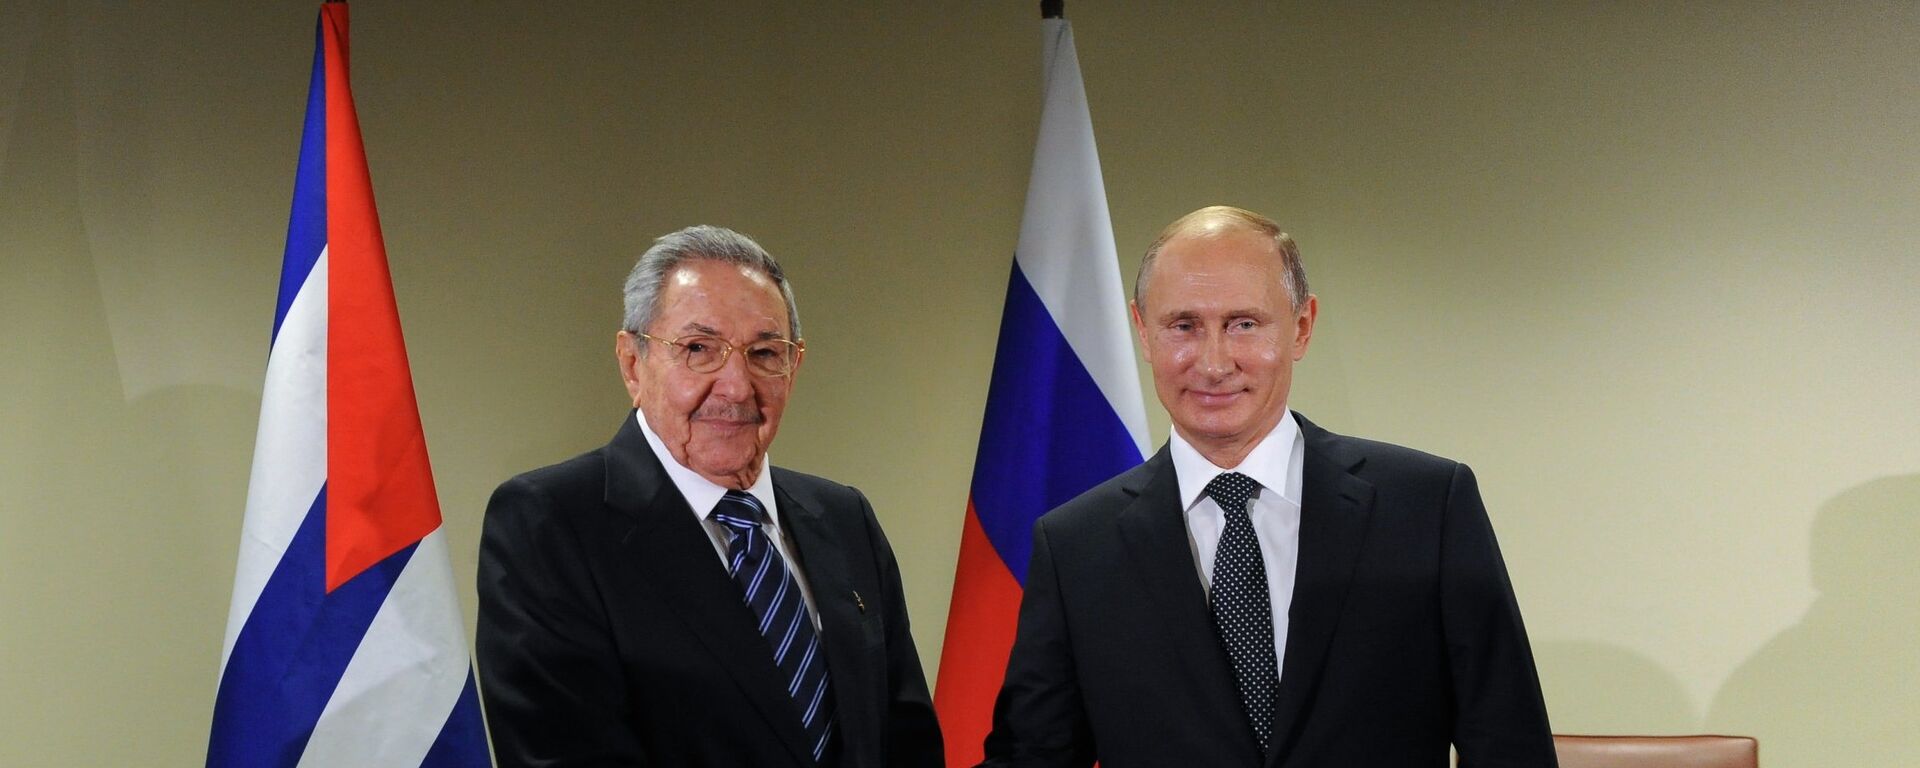 El presidente de Rusia, Vladímir Putin, y su homólogo cubano, Raúl Castro - Sputnik Mundo, 1920, 03.06.2021